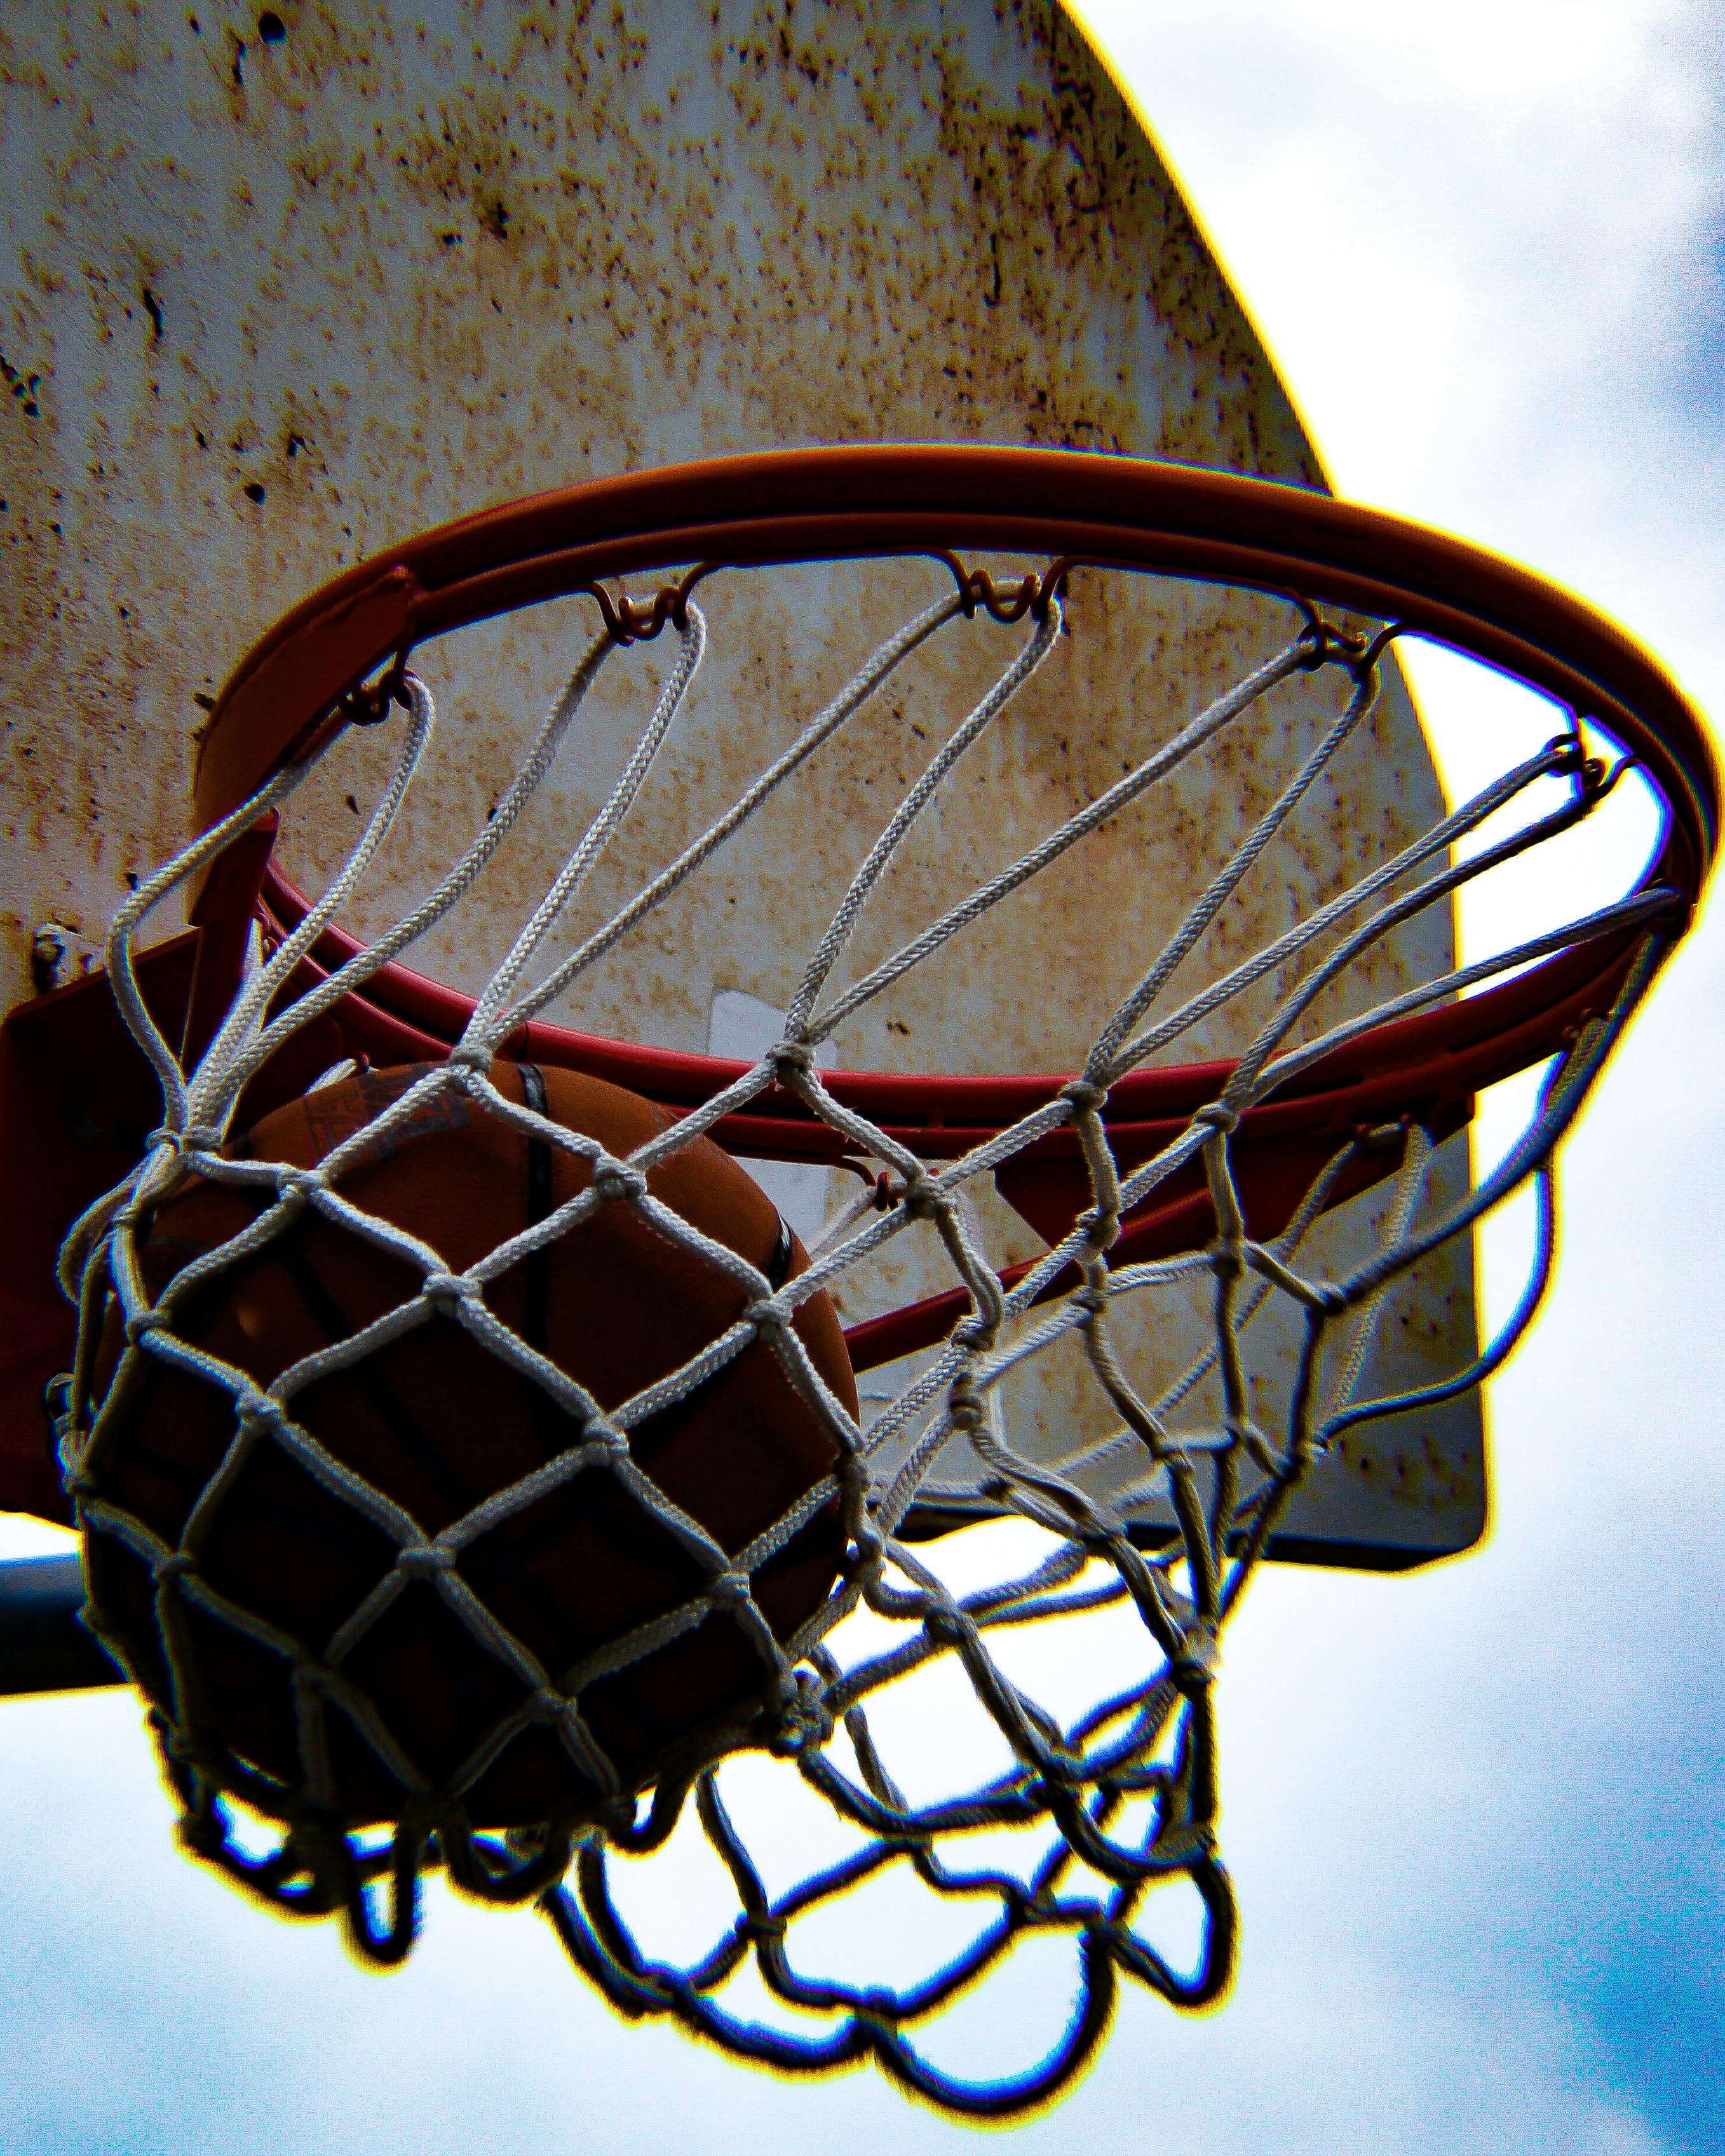 Free stock photo of ball, basketball, Basketball Hoop